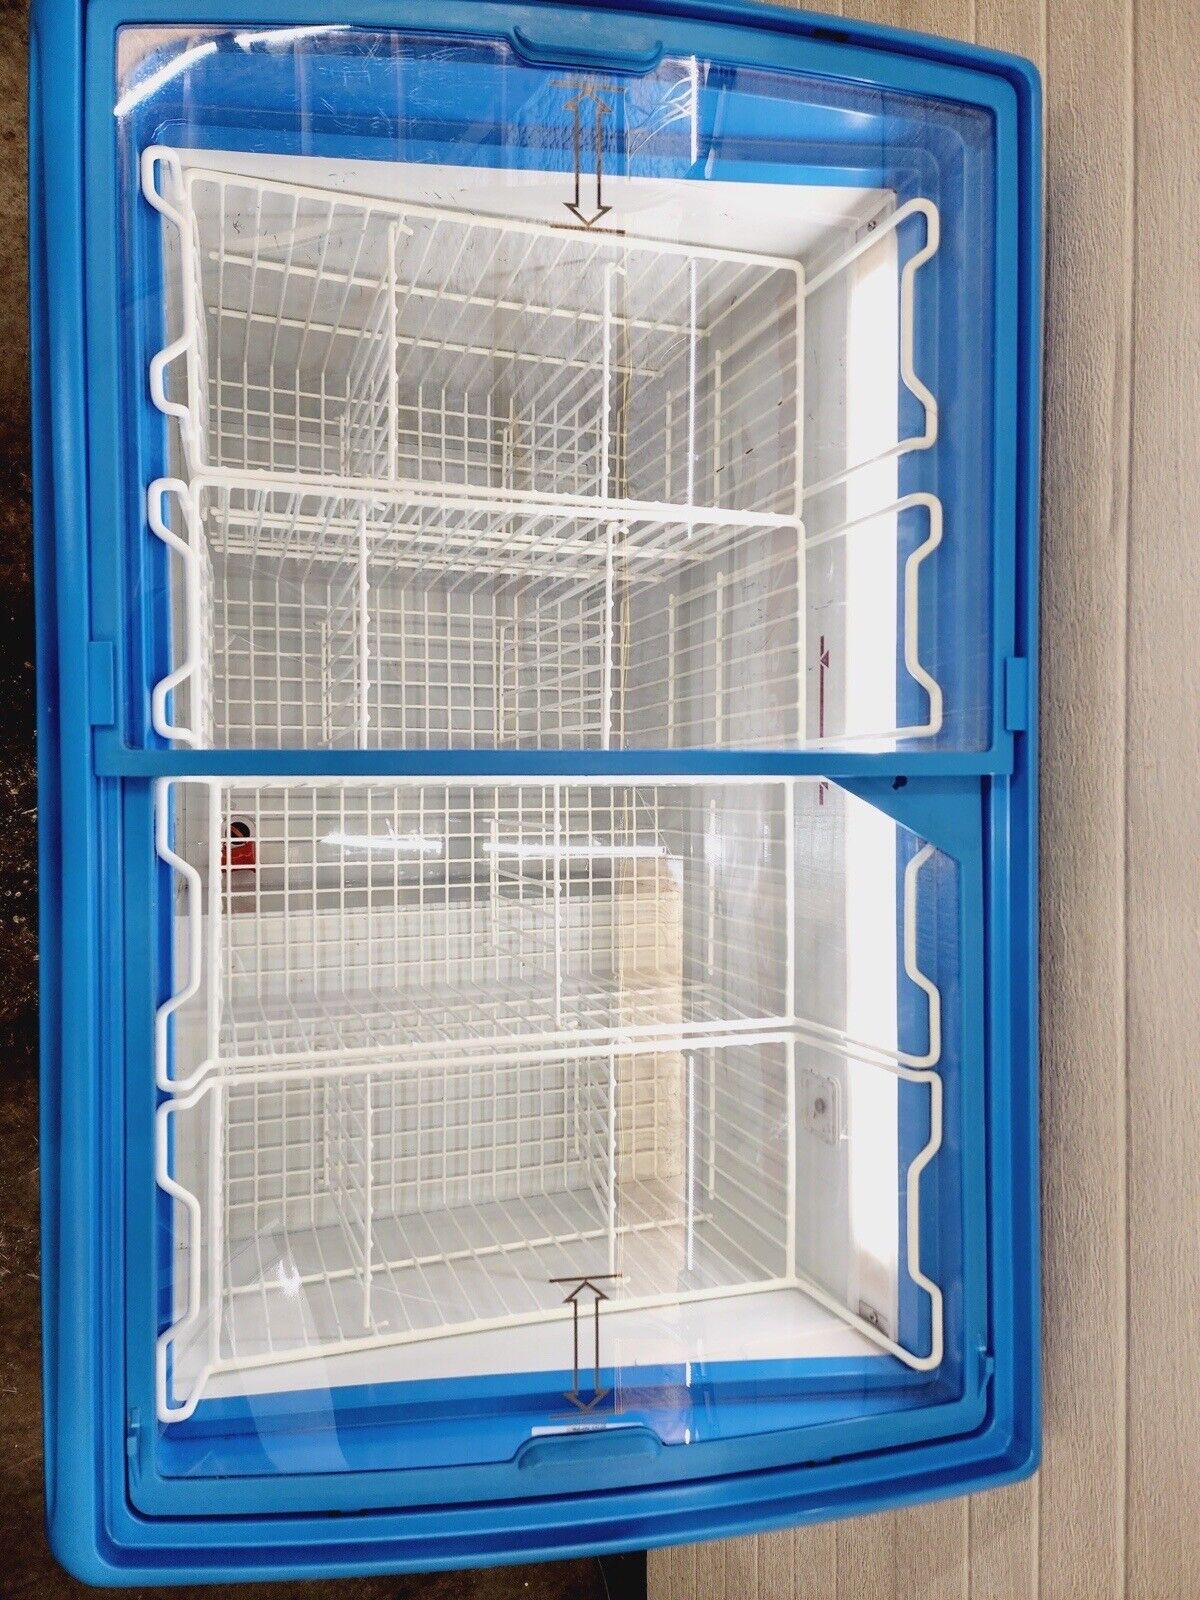 AHT RIO S 100 Sliding Glass Top 2 Door Ice Cream Freezer Merchandiser